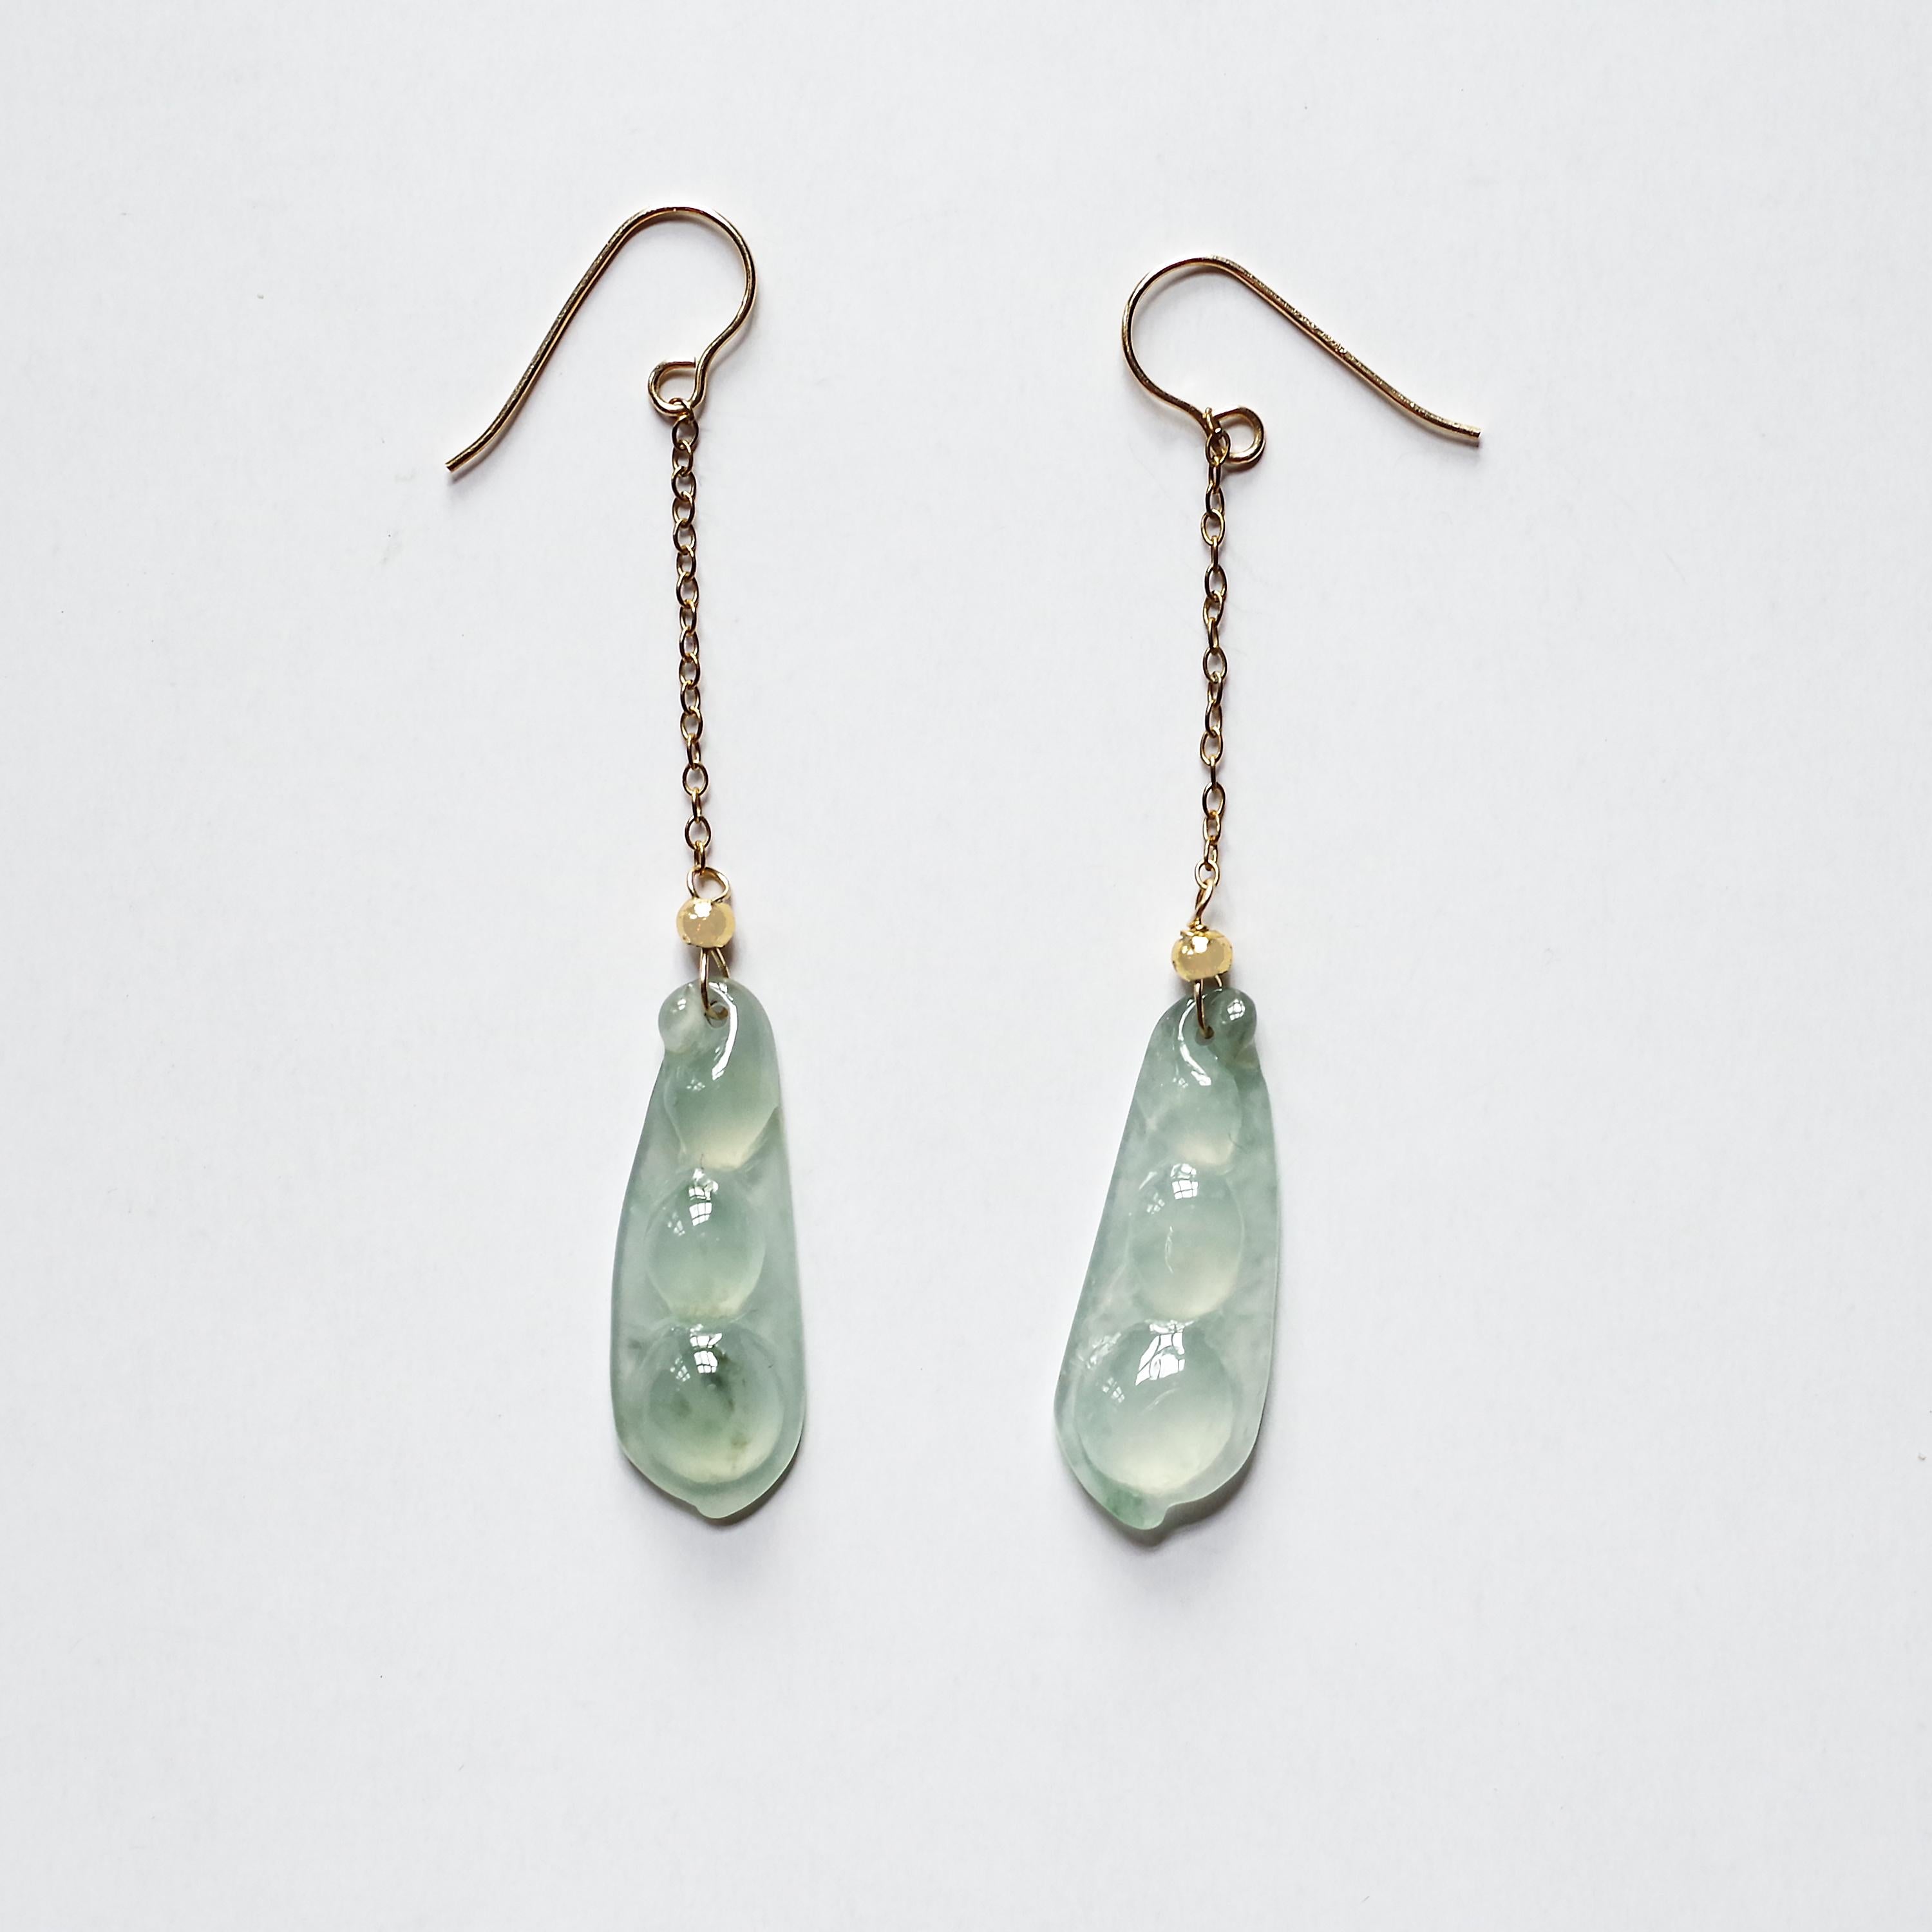 Jade Earrings in Rare Semi-Transparent Bluish-Green 10